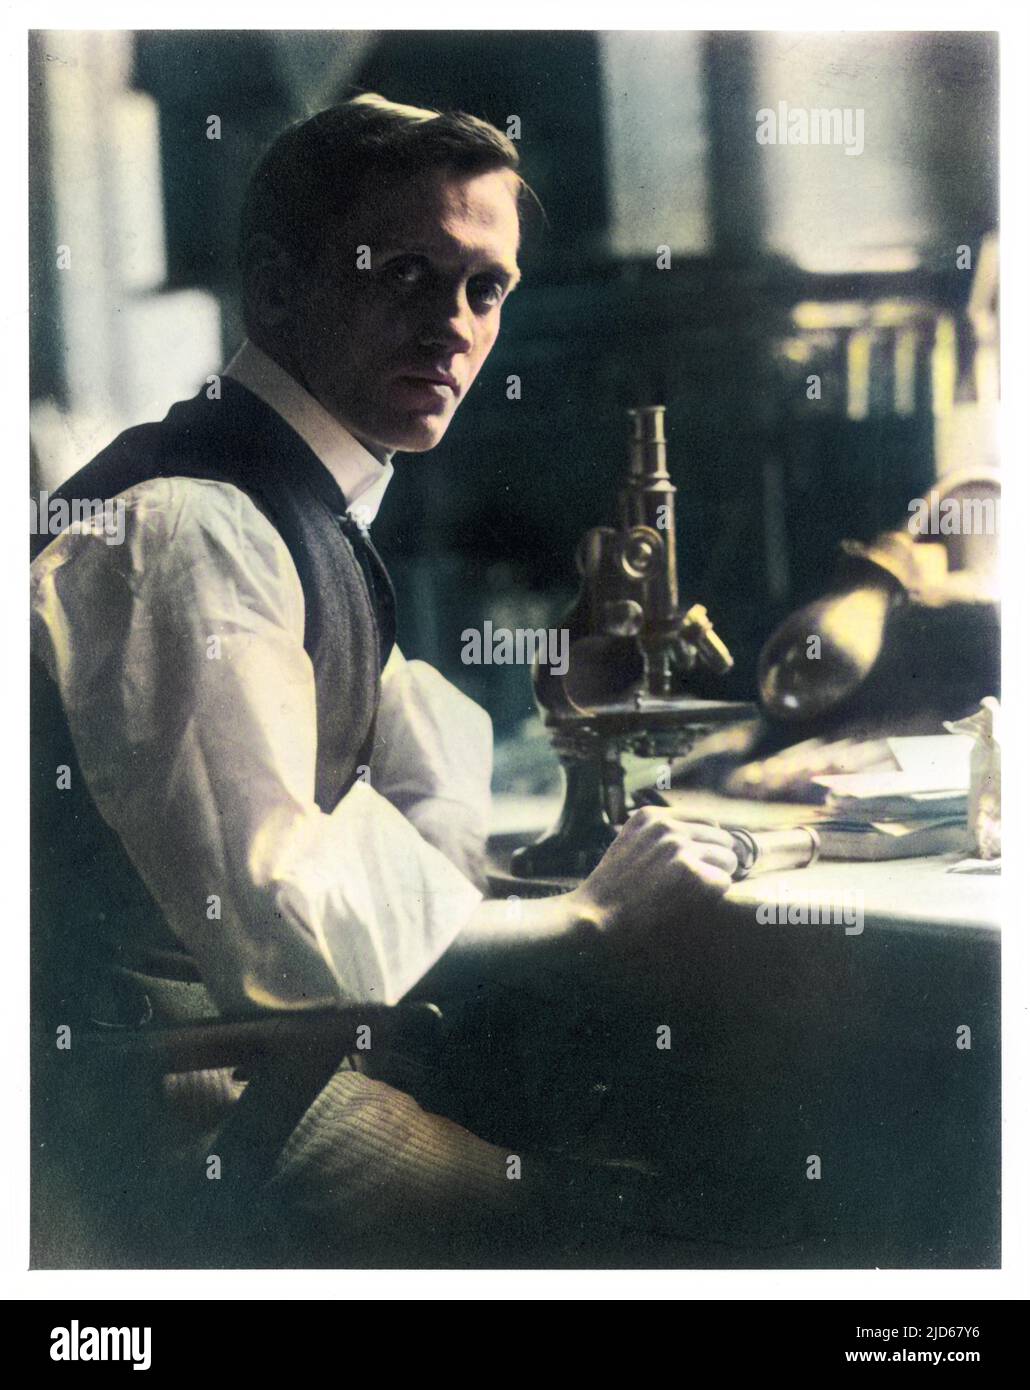 SIR ALEXANDER FLEMING (1881 - 1955), bactériologue écossais à son bureau avec son microscope. Version colorisée de : 10046320 Banque D'Images